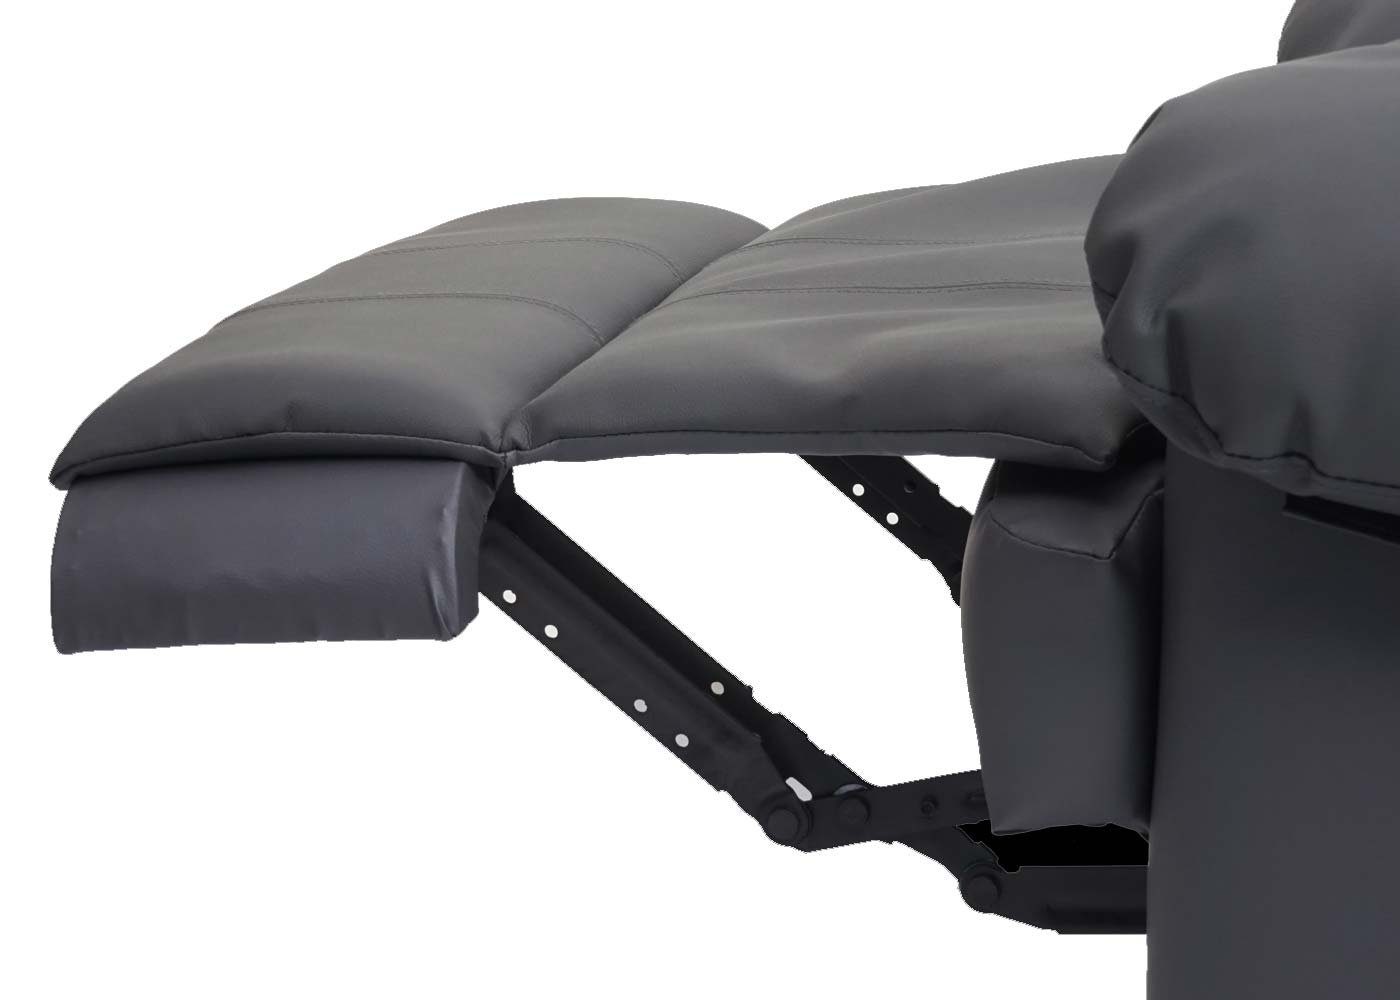 MCW Liegefläche: Fußstütze verstellbar, Rückenfläche, 165 cm, TV-Sessel MCW-G15, Verstellbare Liegefunktion grau